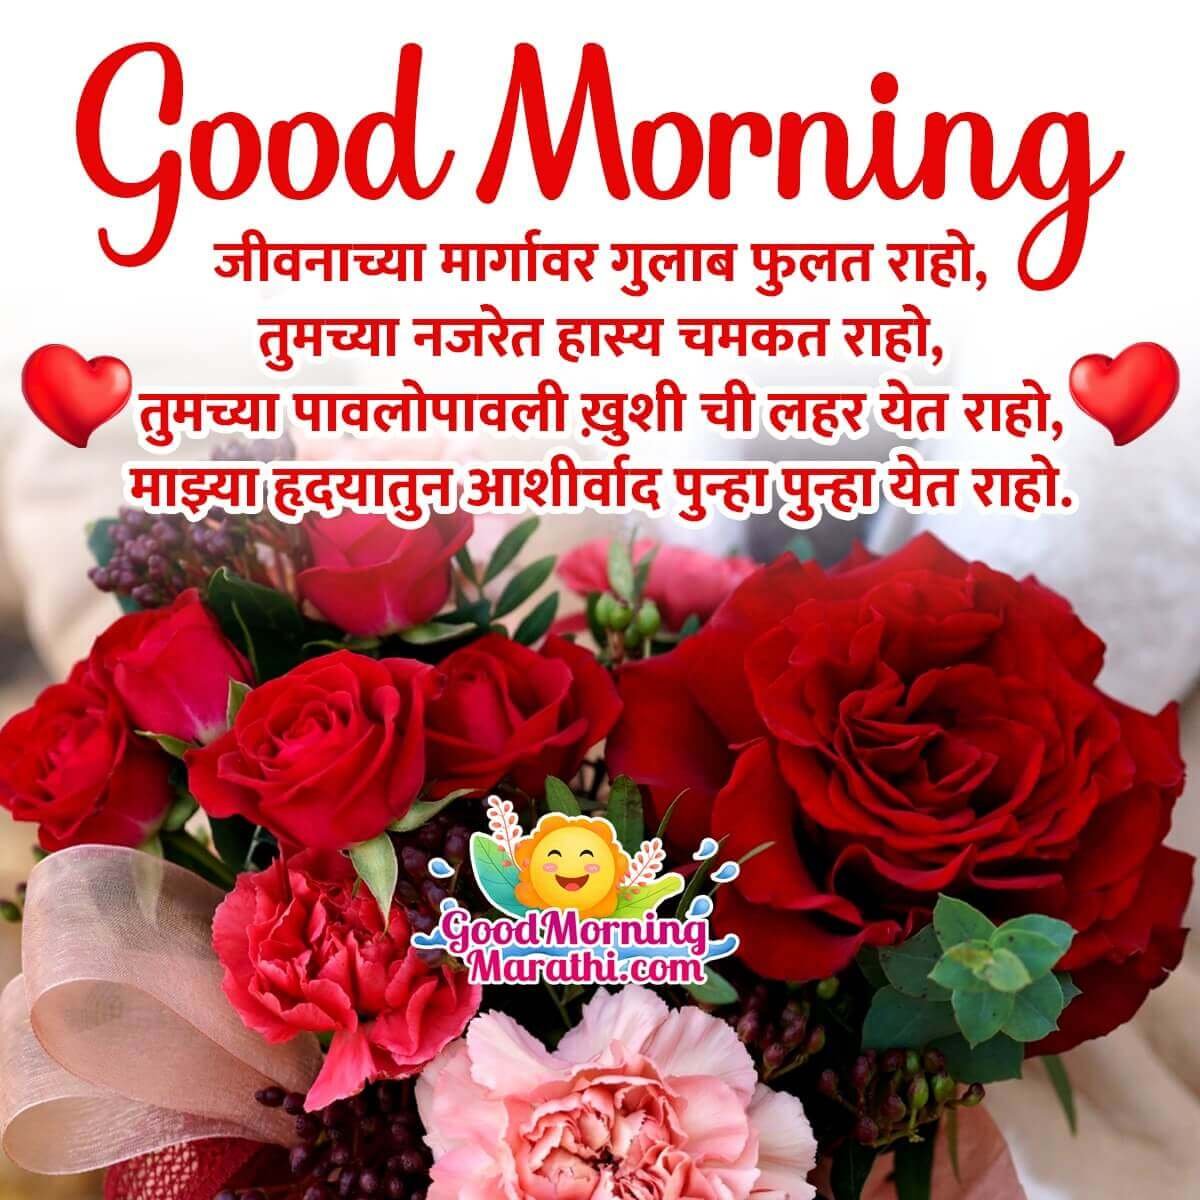 Awesome Morning Rose Shayari Wish Image